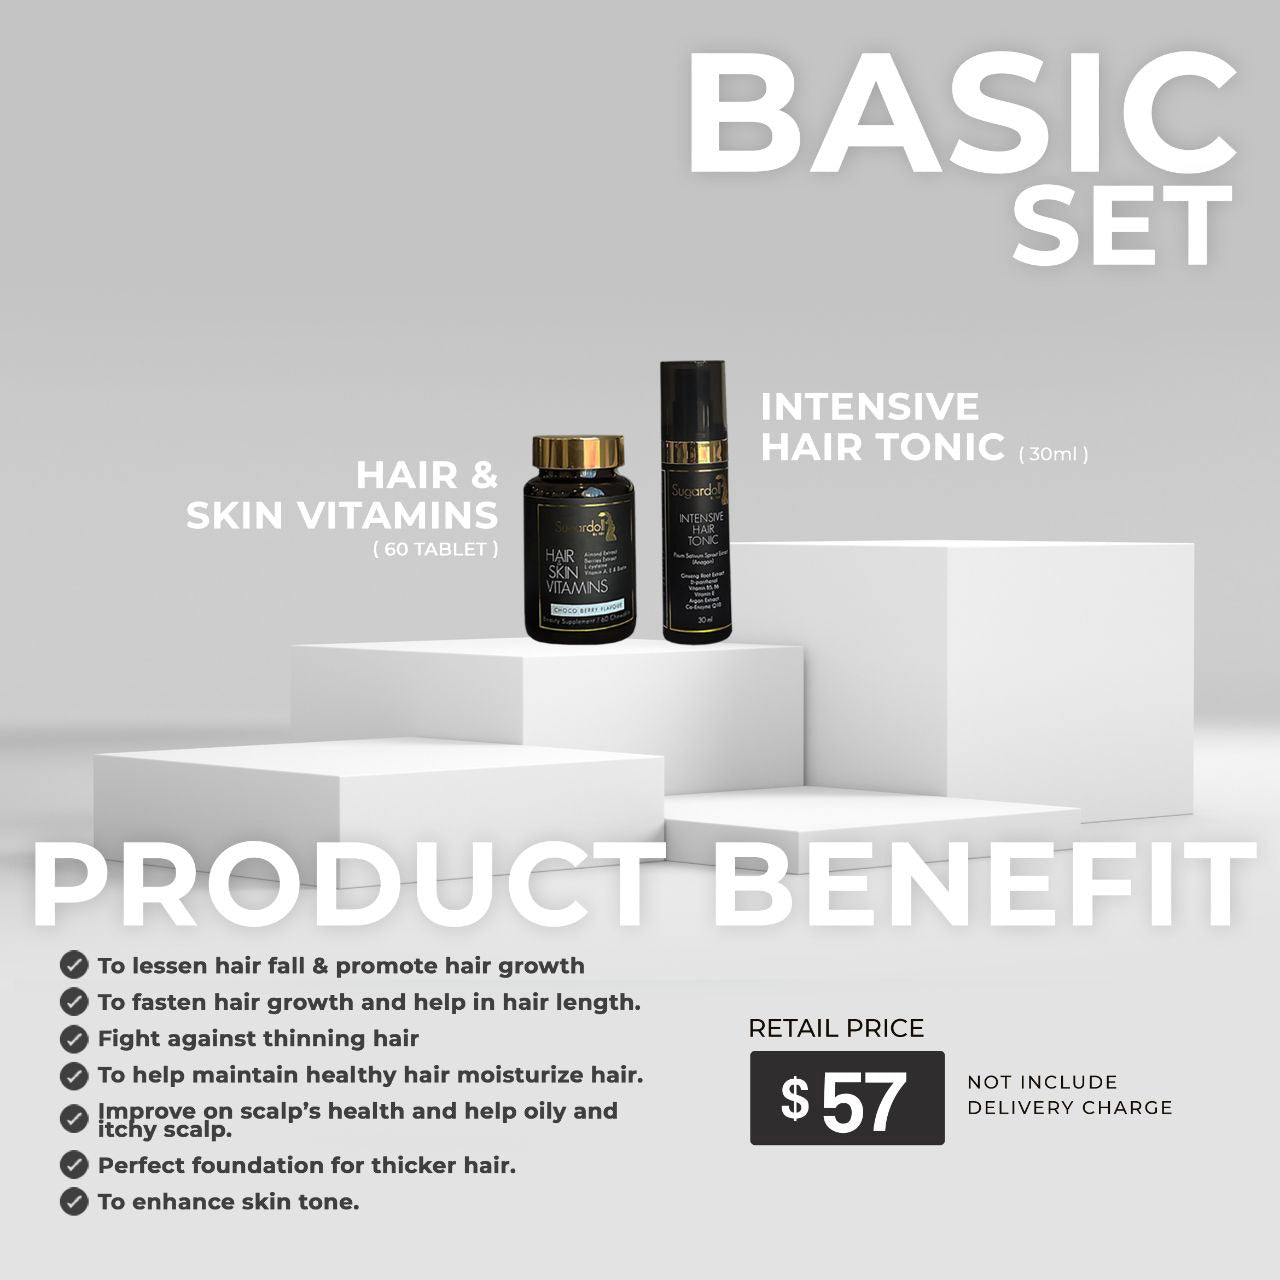 Sugardoll - Basic Set (Vitamin + Hair Tonic)